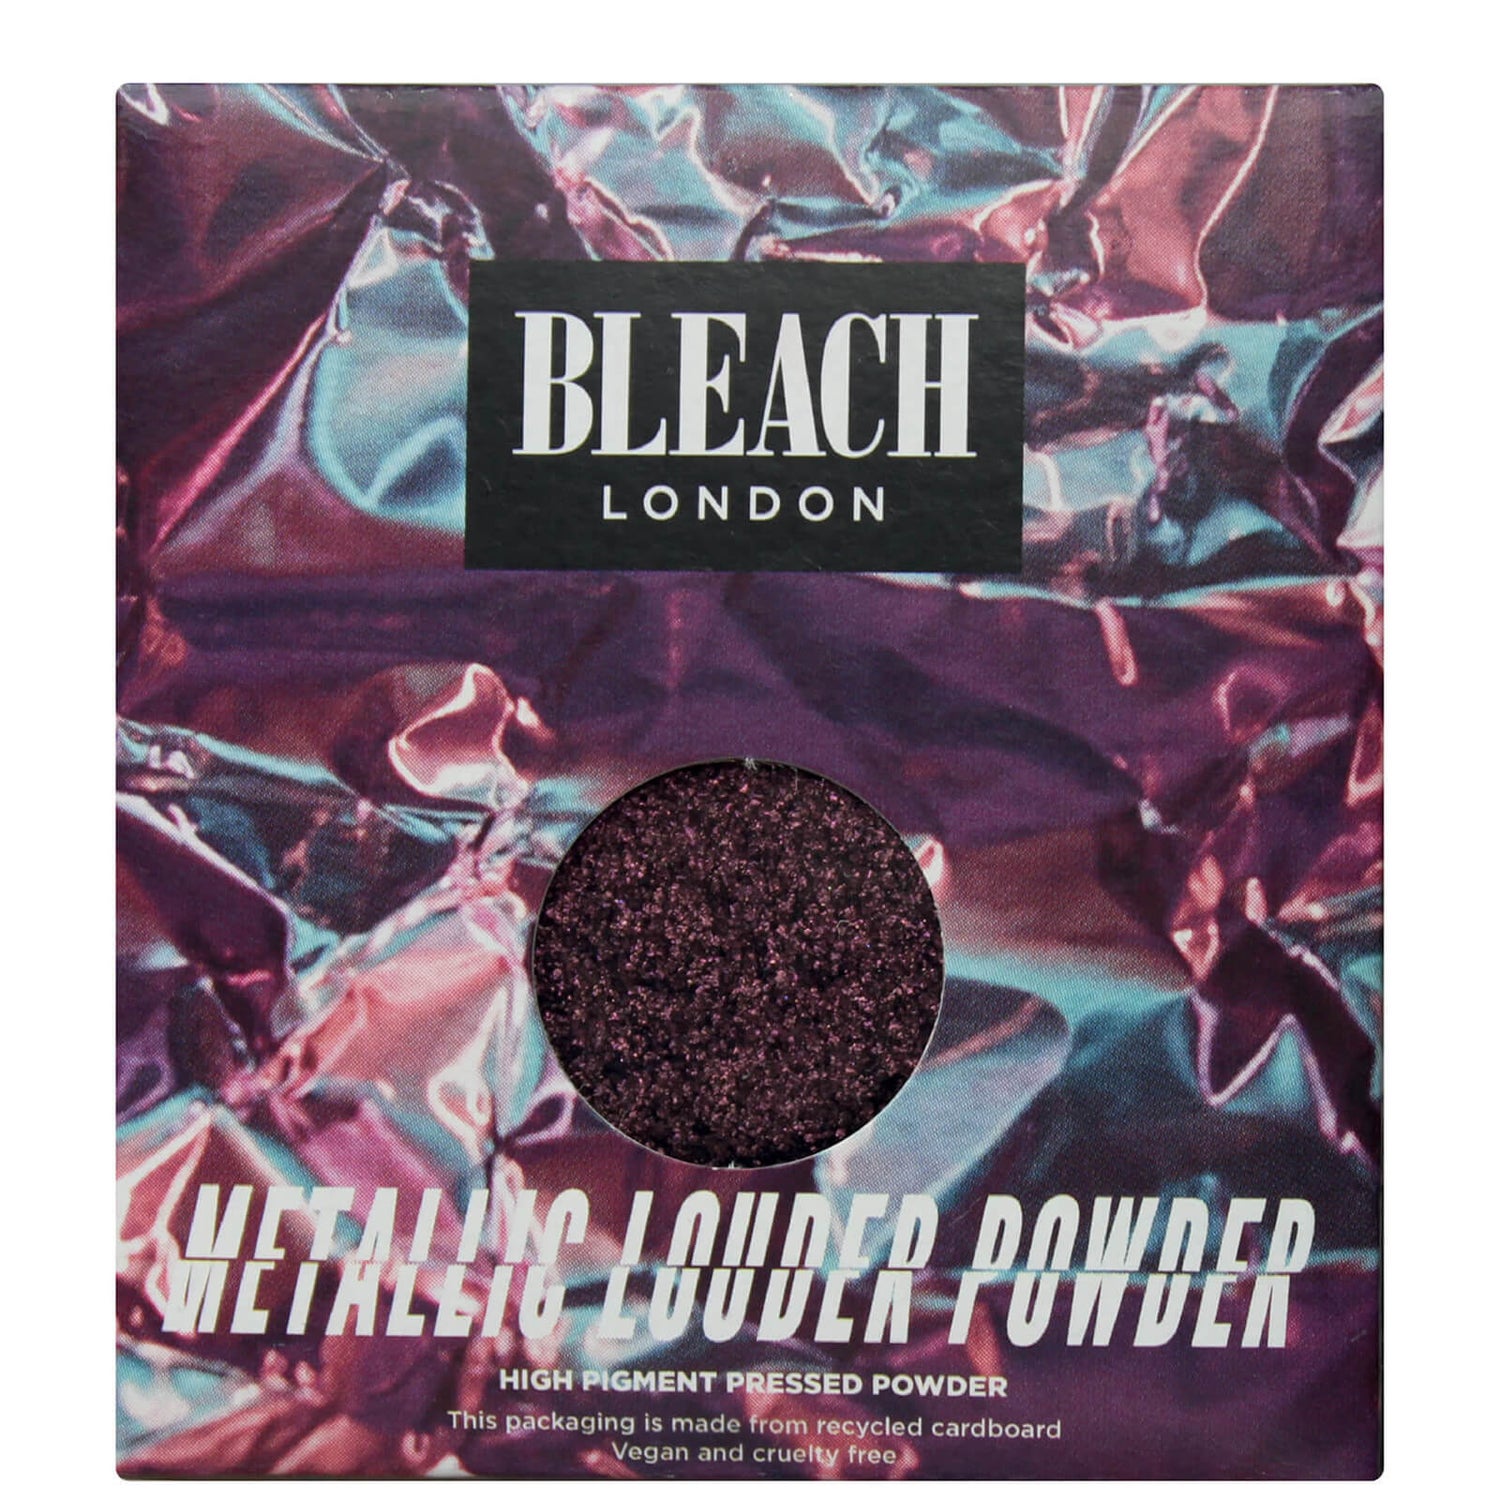 Ombre à paupières Metallic Louder Powder BLEACH LONDON – Bv 5 Me